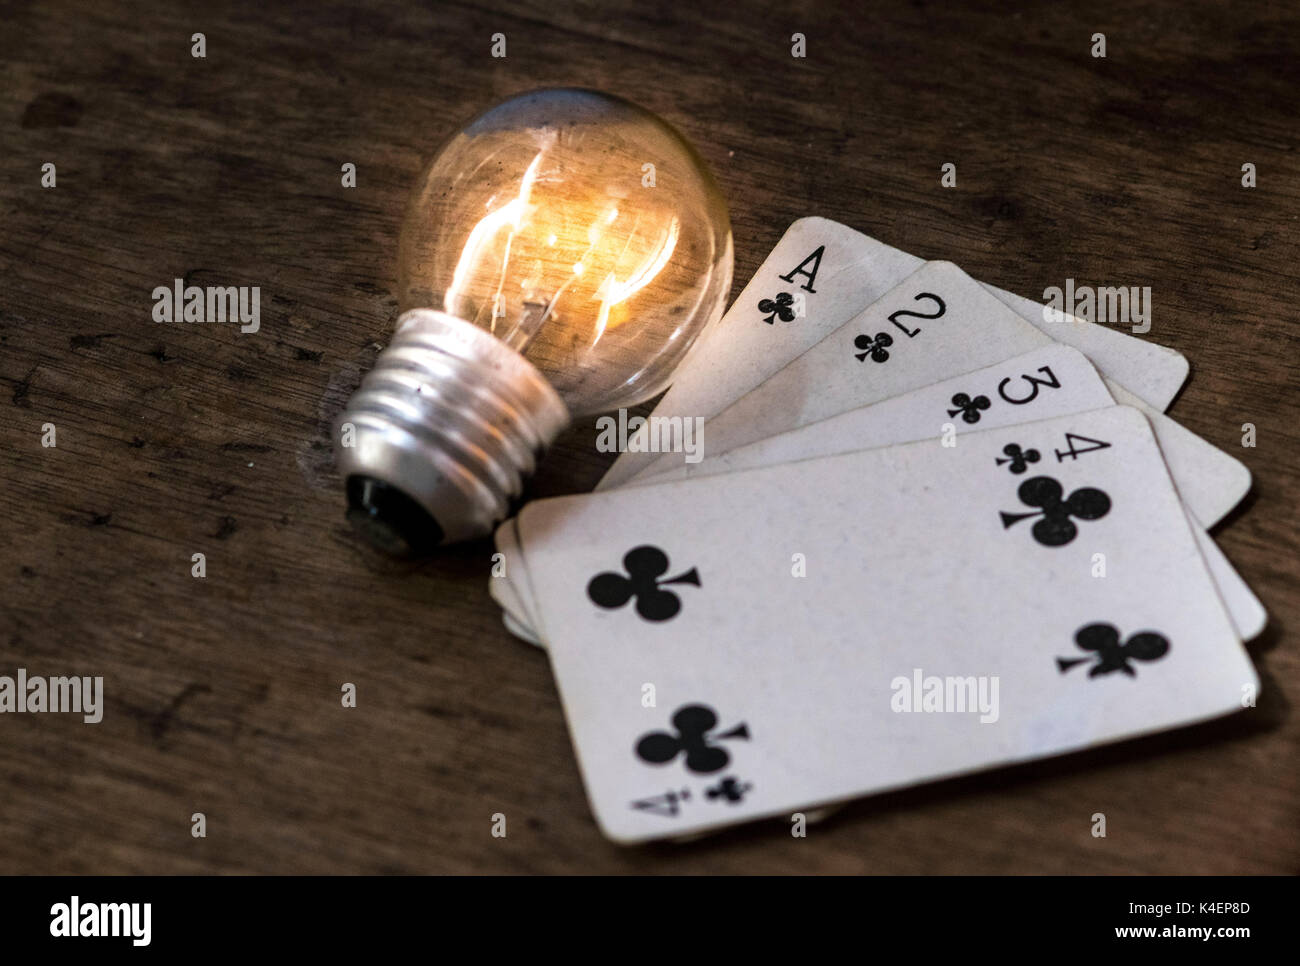 Accende la lampadina della luce bianca e giocare a carte a faccia in su sulla parte superiore di una superficie di legno, gioco d'azzardo e vincendo il concetto idea Foto Stock